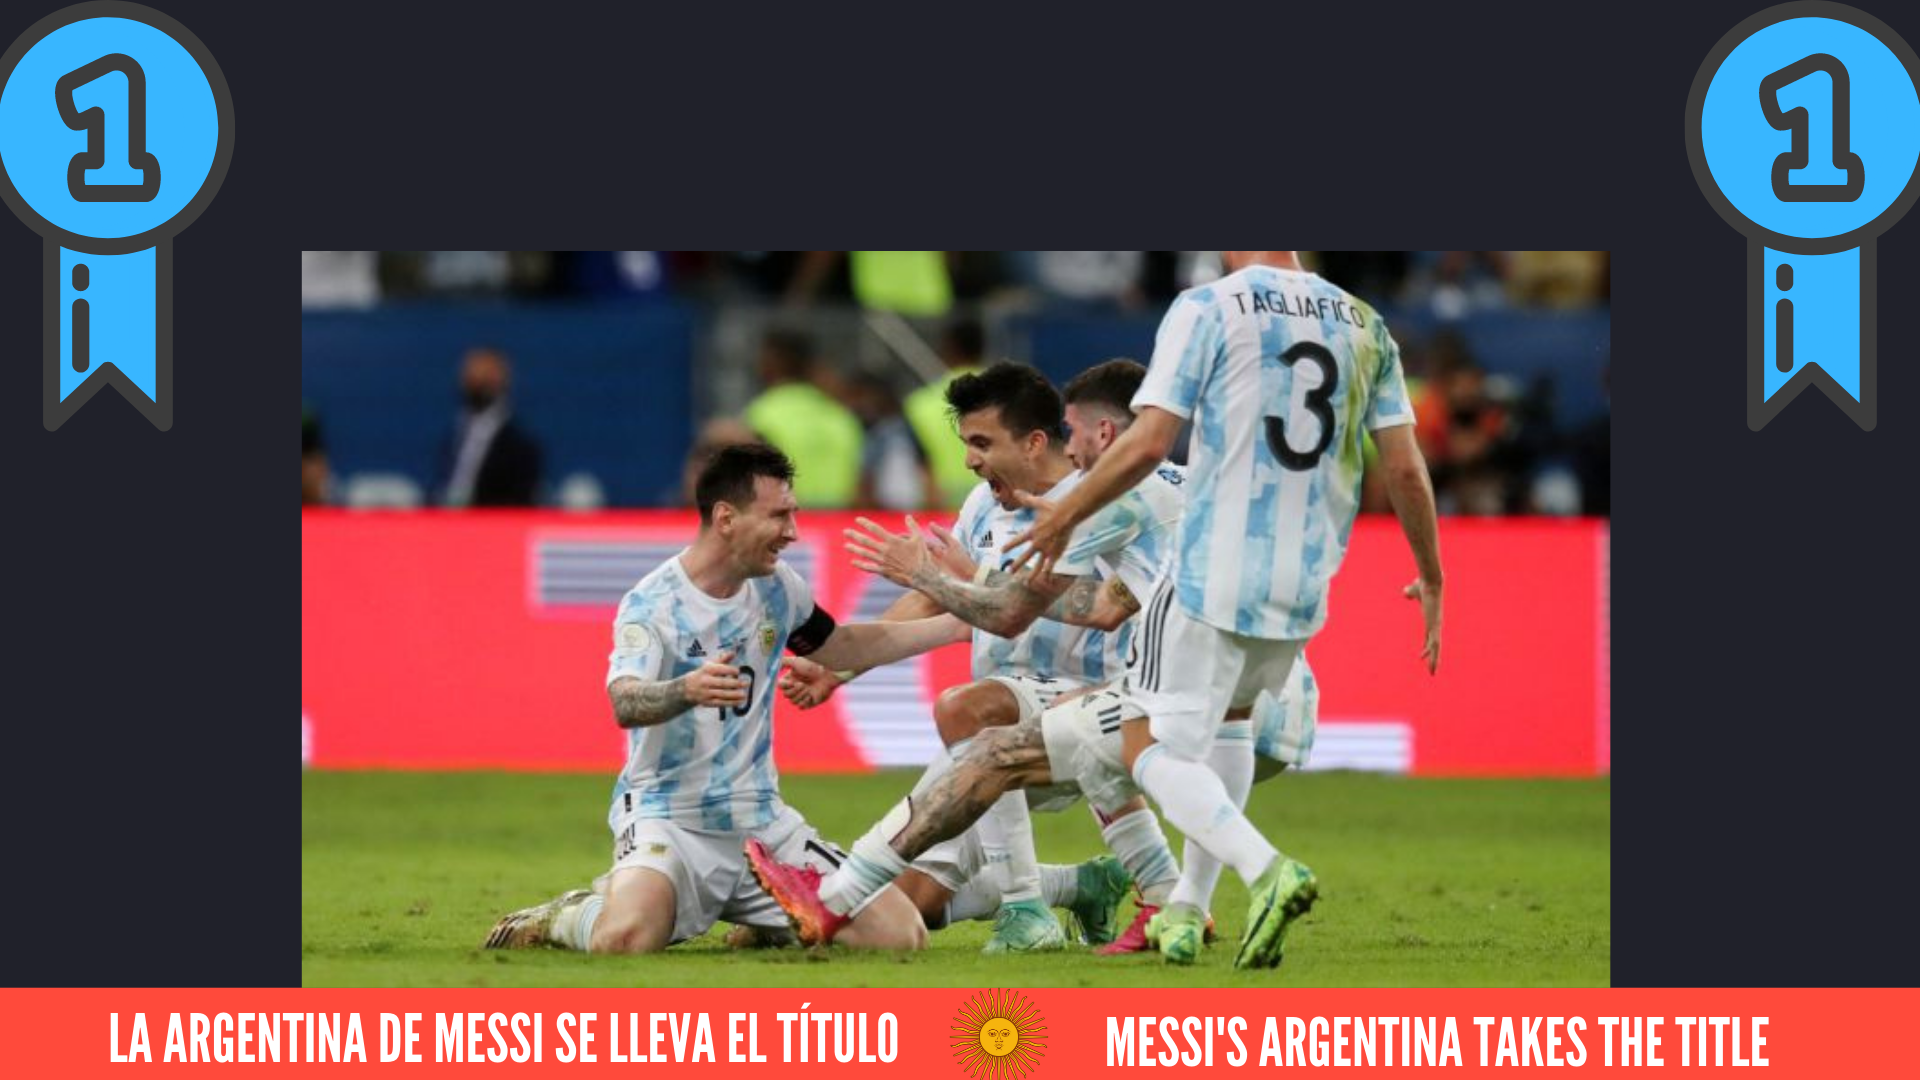 La Argentina de Messi se lleva el título.png